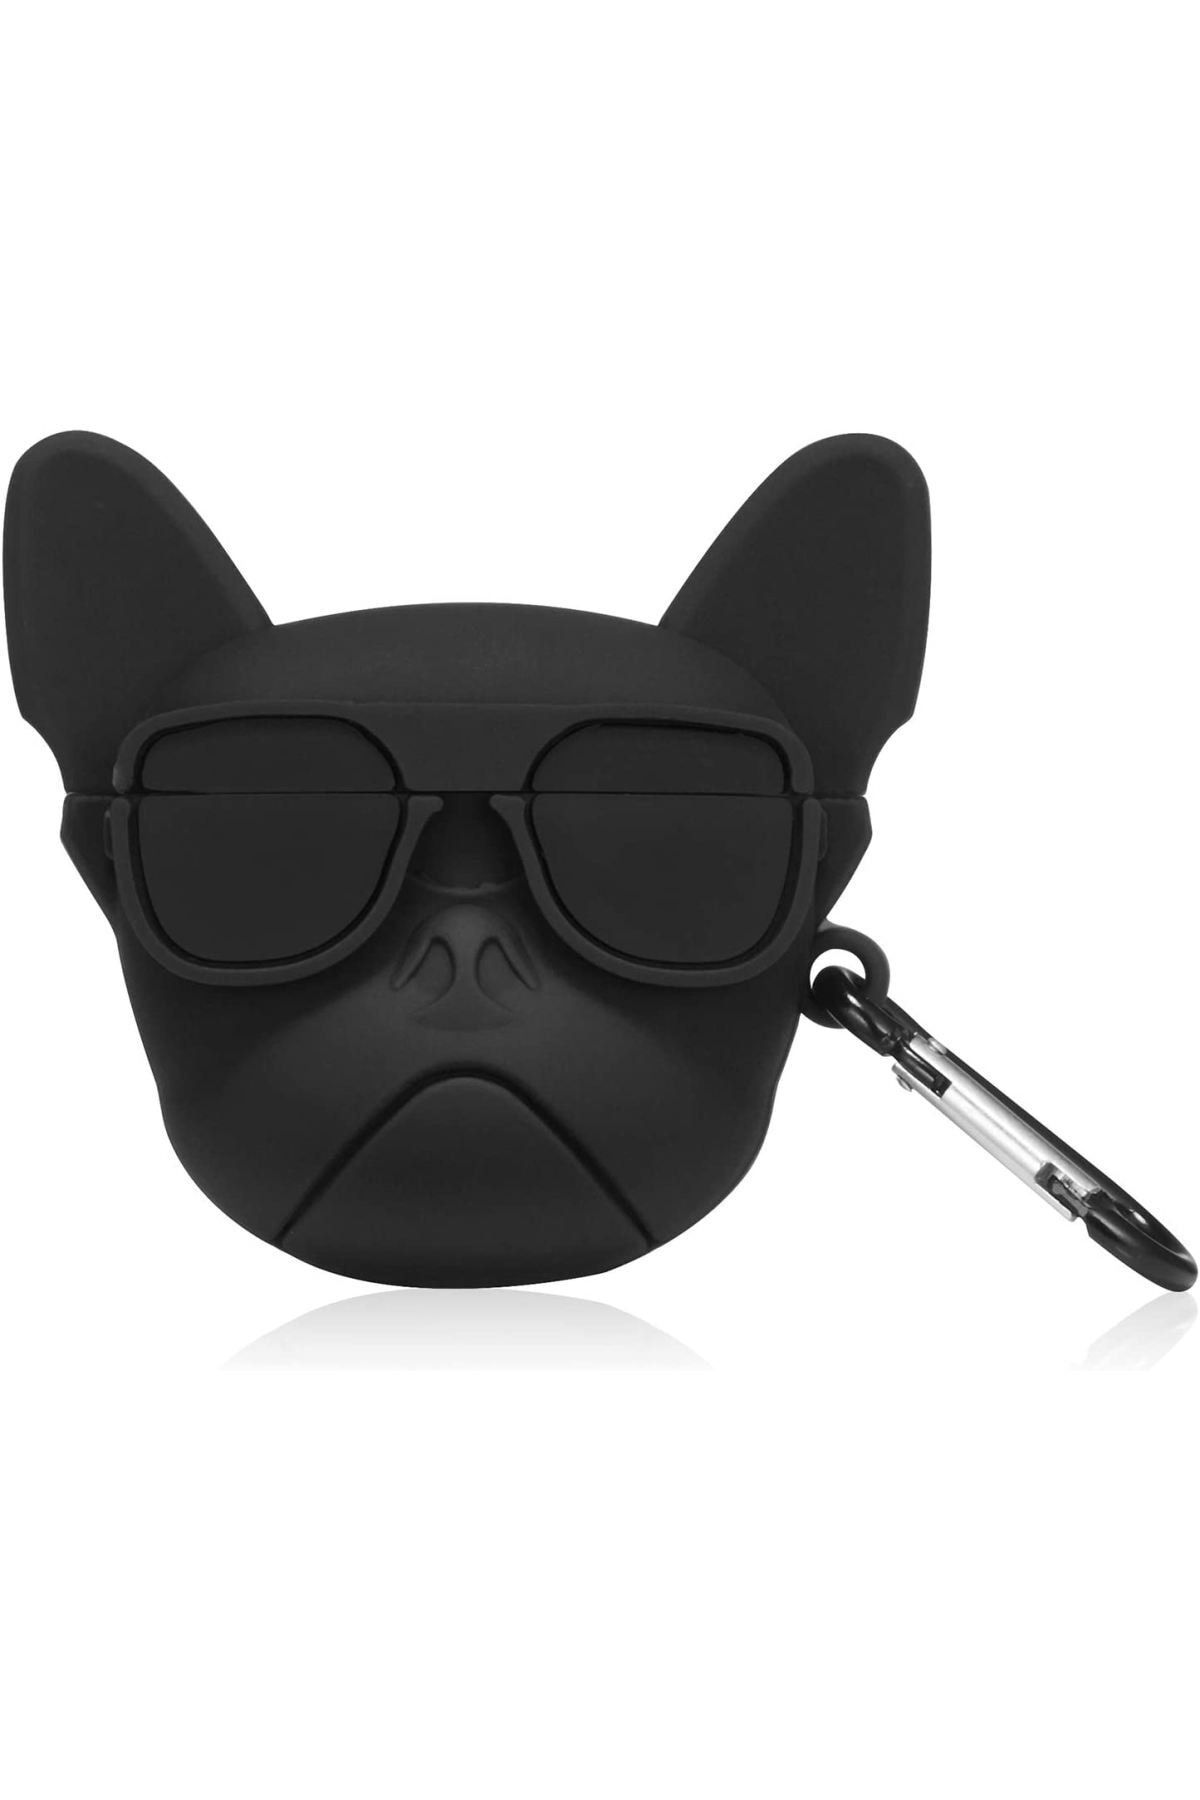 HappyCase Pro  Kulaklık Kılıfı 3d Silikon Siyah French Bulldog Köpek